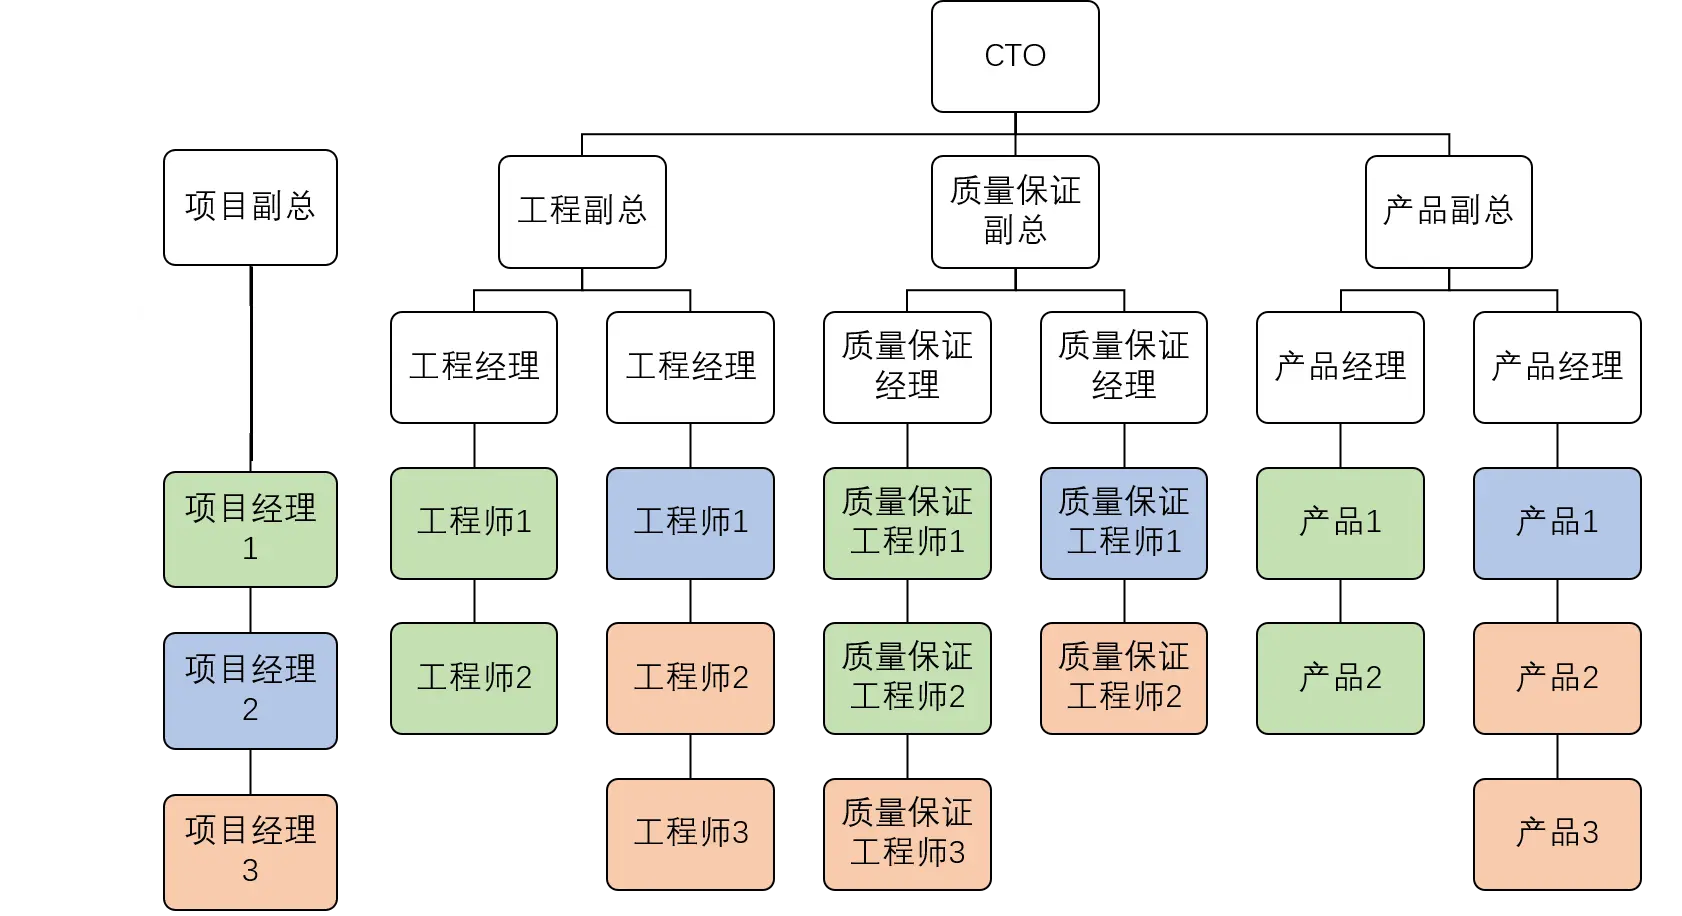 矩阵型组织架构图